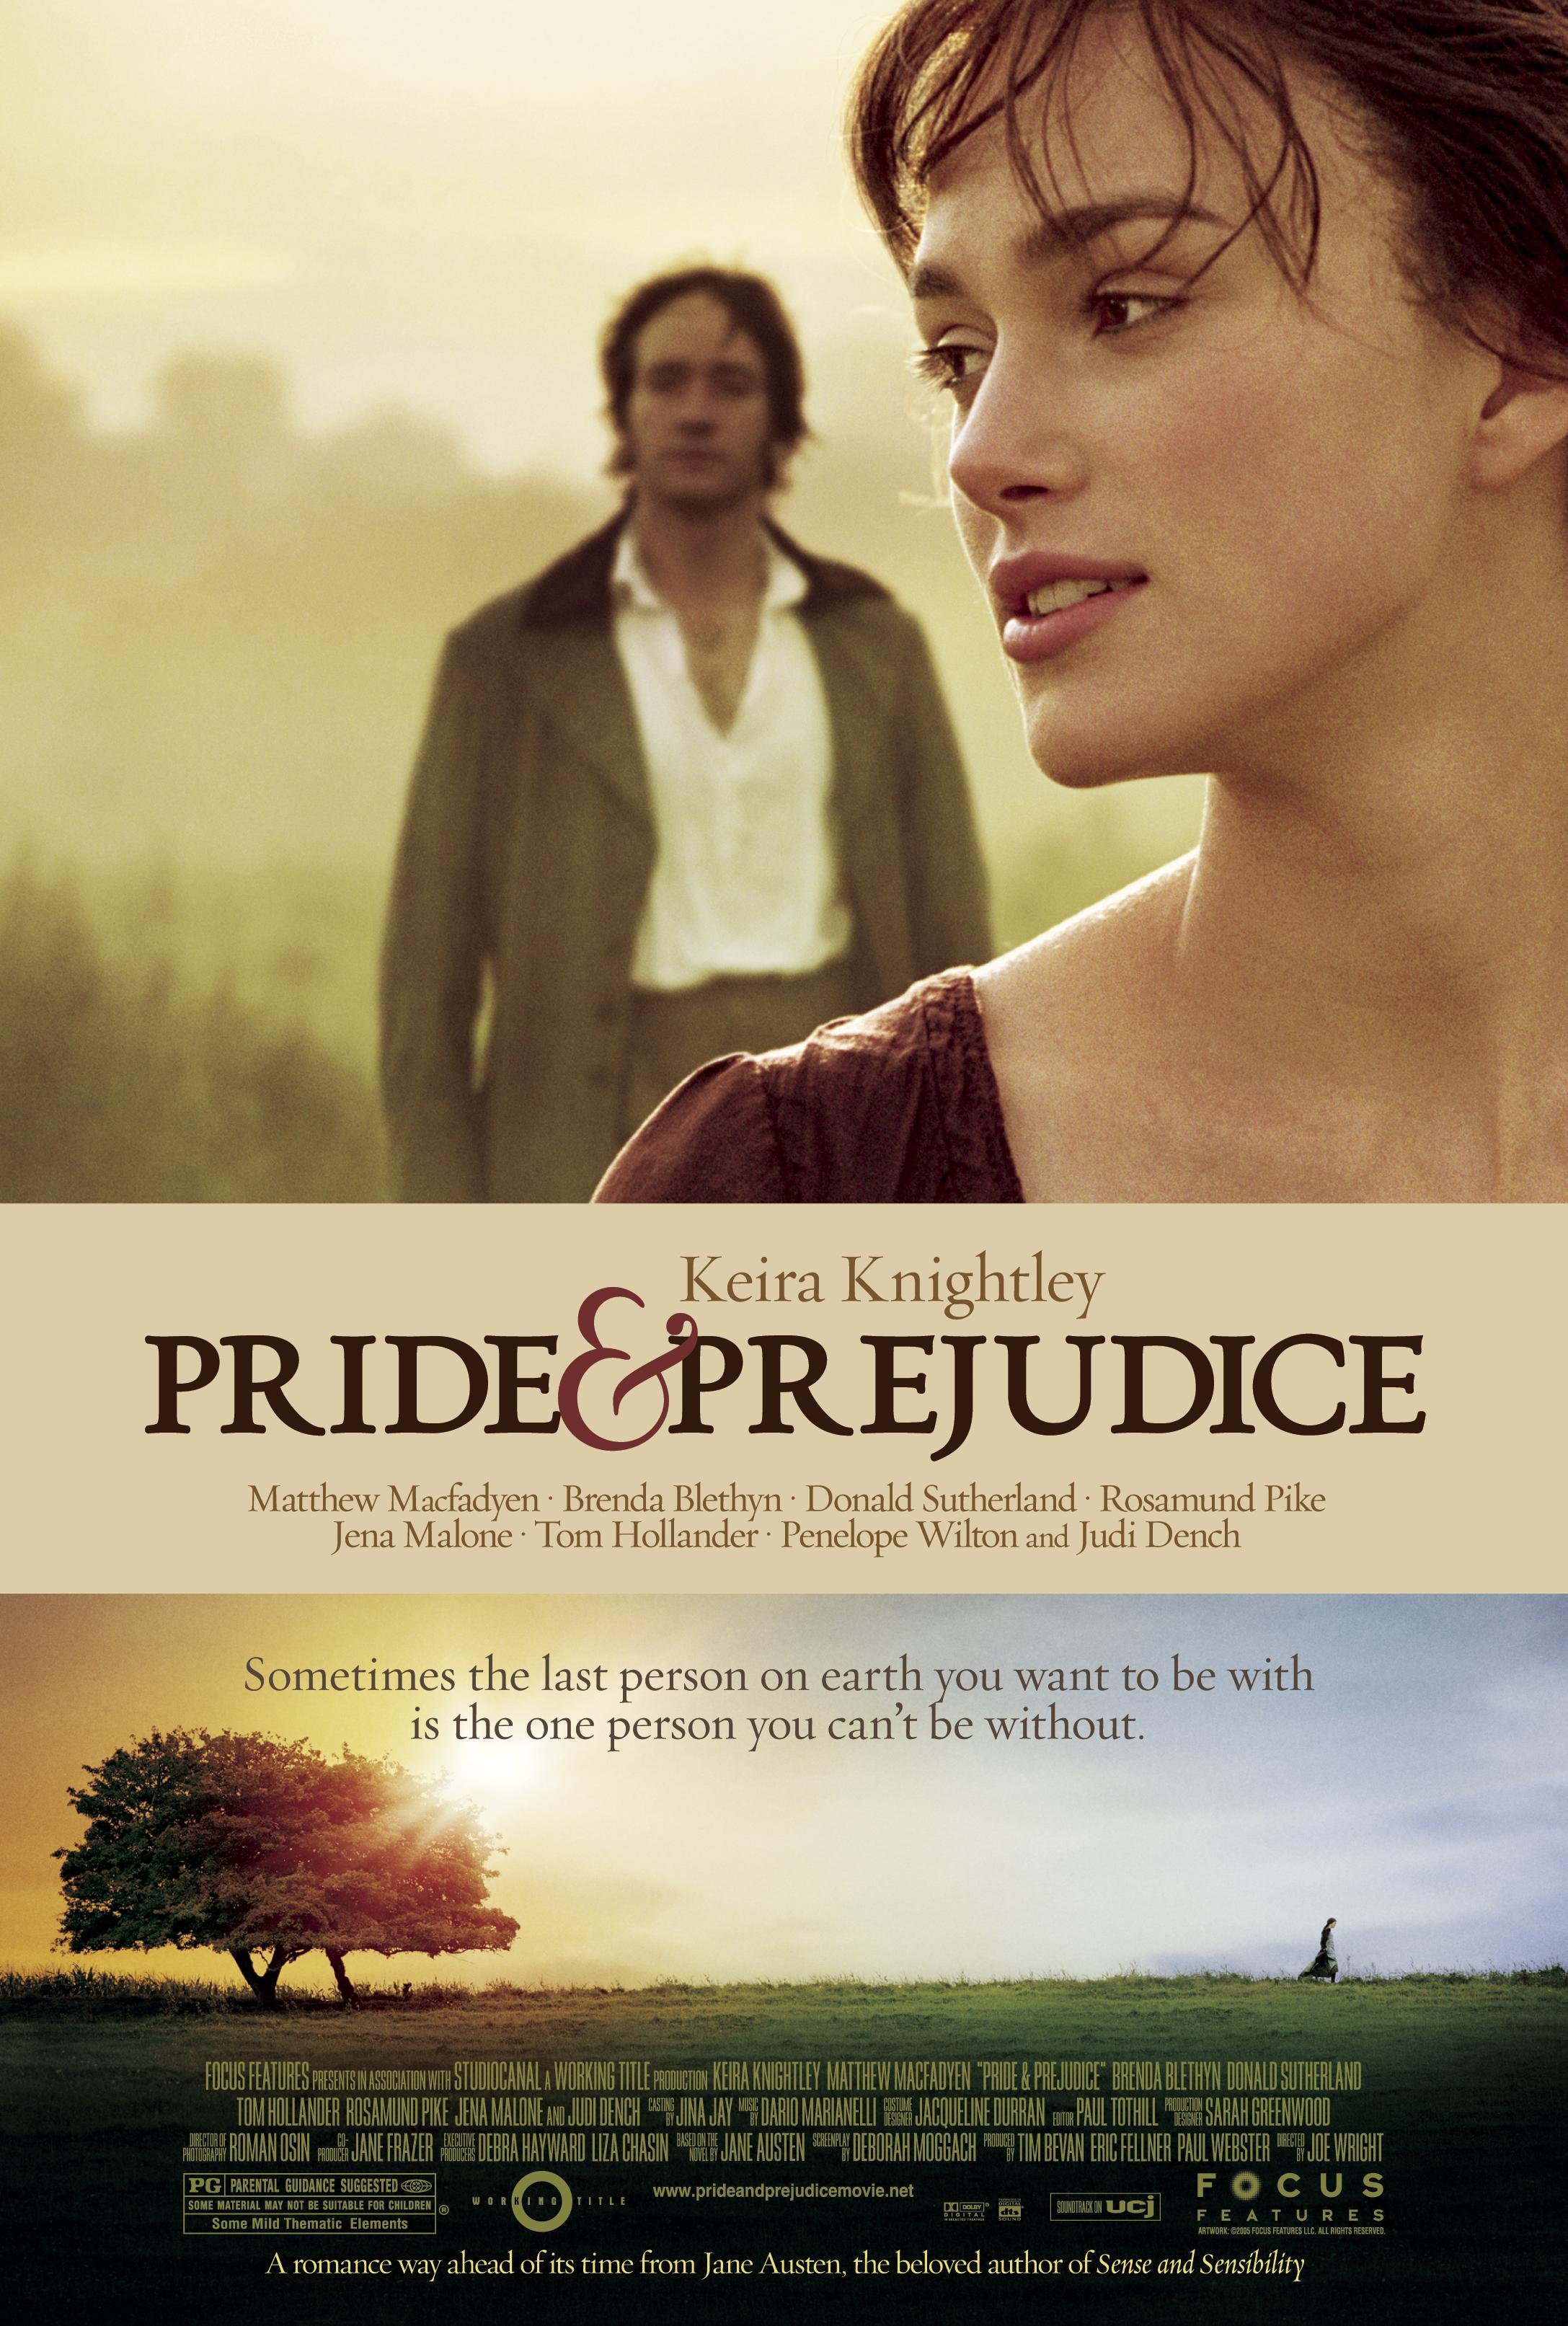 Pride and prejudice full movie youtube